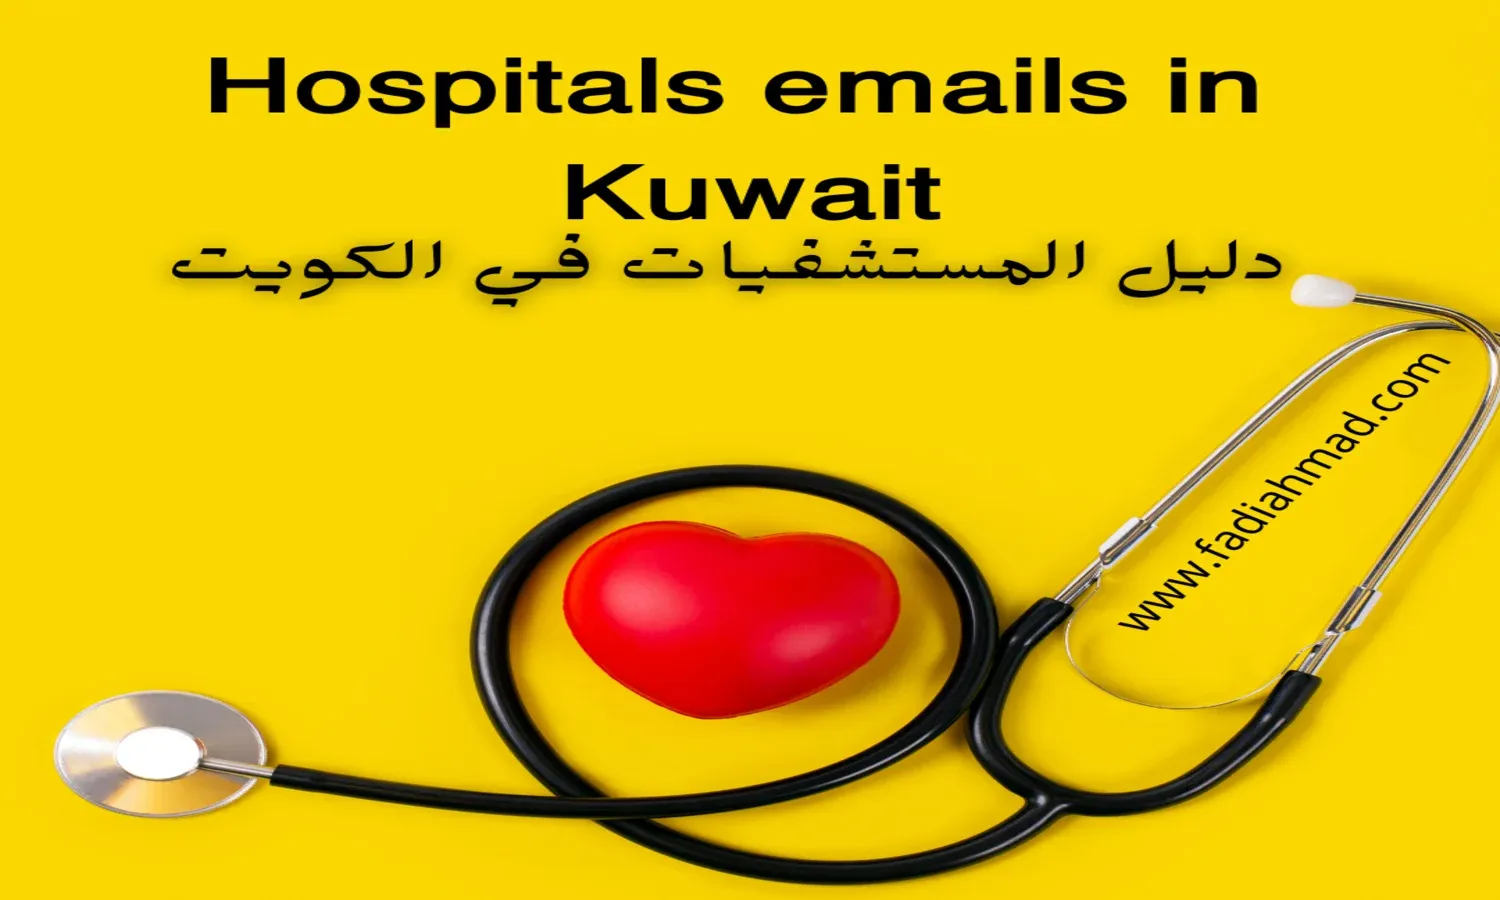 ايميلات المستشفيات في الكويت  -  Hospitals emails in Kuwait